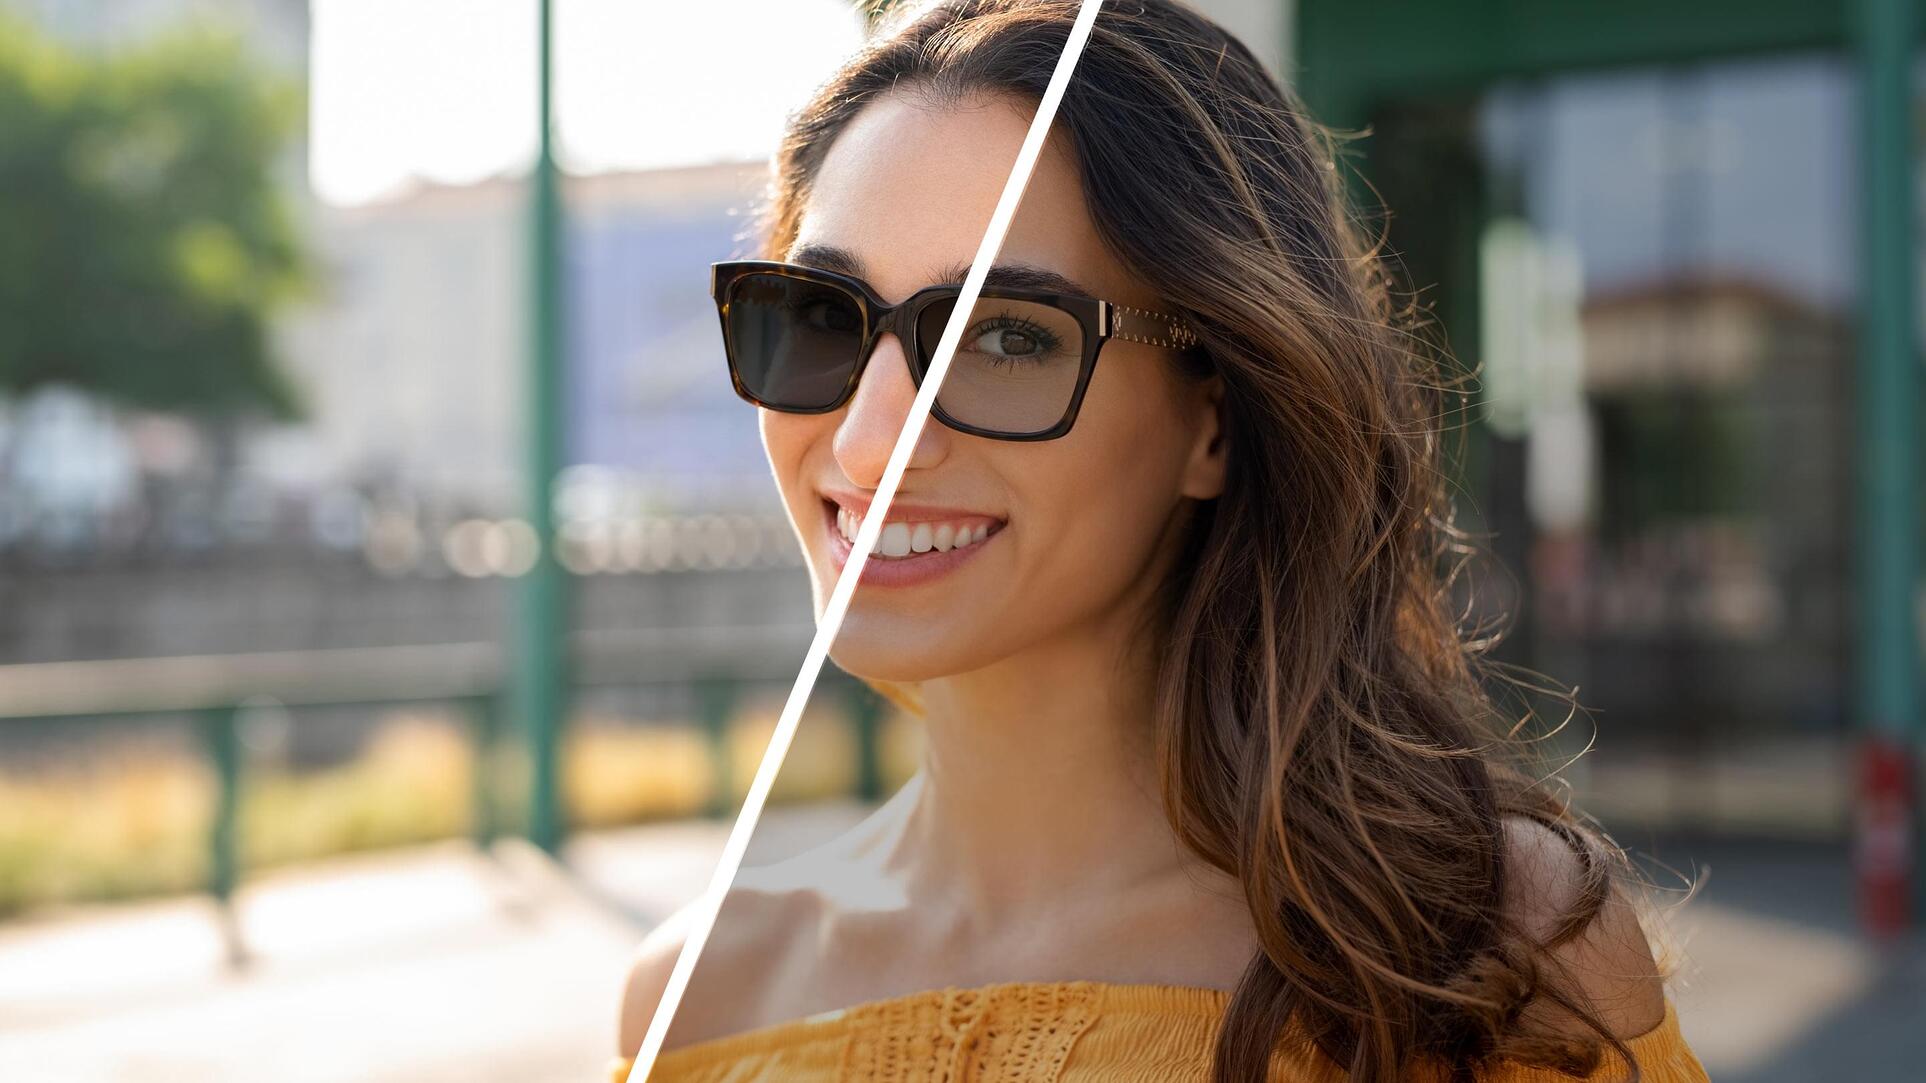 light-responsive lenses vs. sunglasses